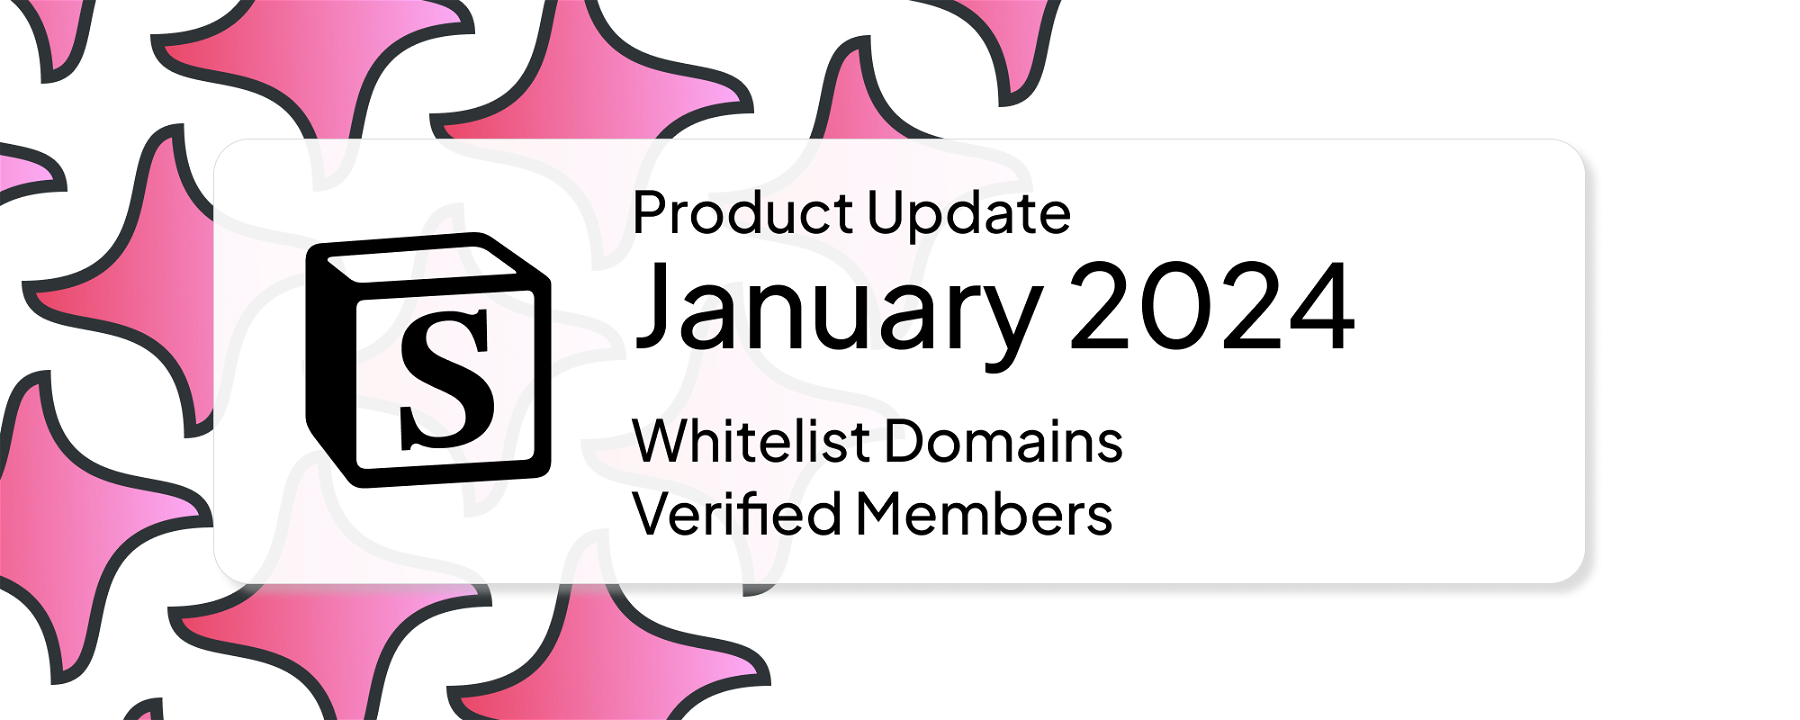 January 2024: Whitelist Domains for Member Management